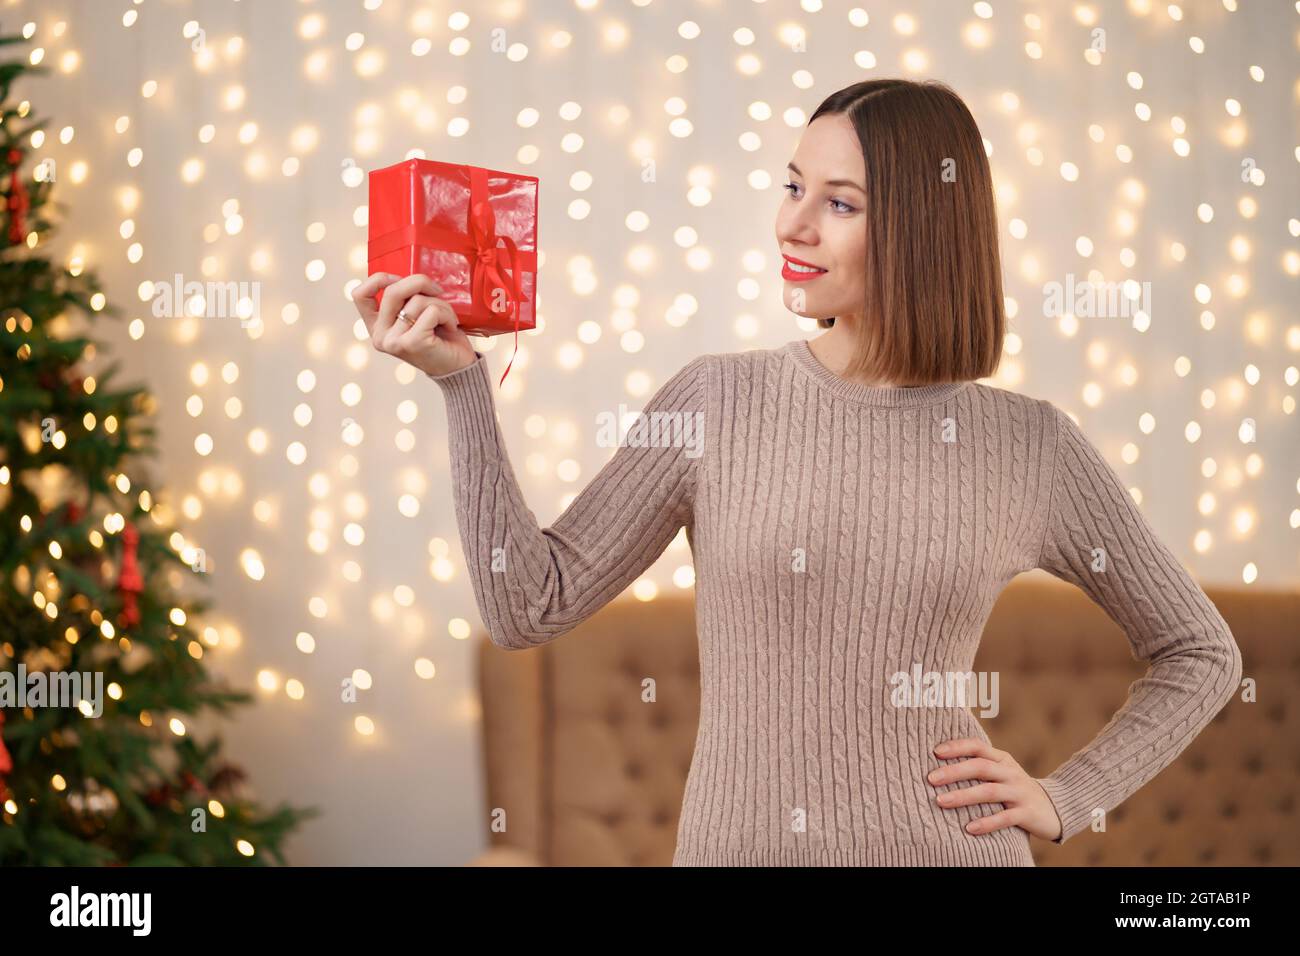 Portrait de jeune femme heureuse lèvres rouges regardant la boîte cadeau emballée.Gros plan la femme satisfaite a reçu la boîte actuelle.Arrière-plan des lumières de Noël festives. Banque D'Images